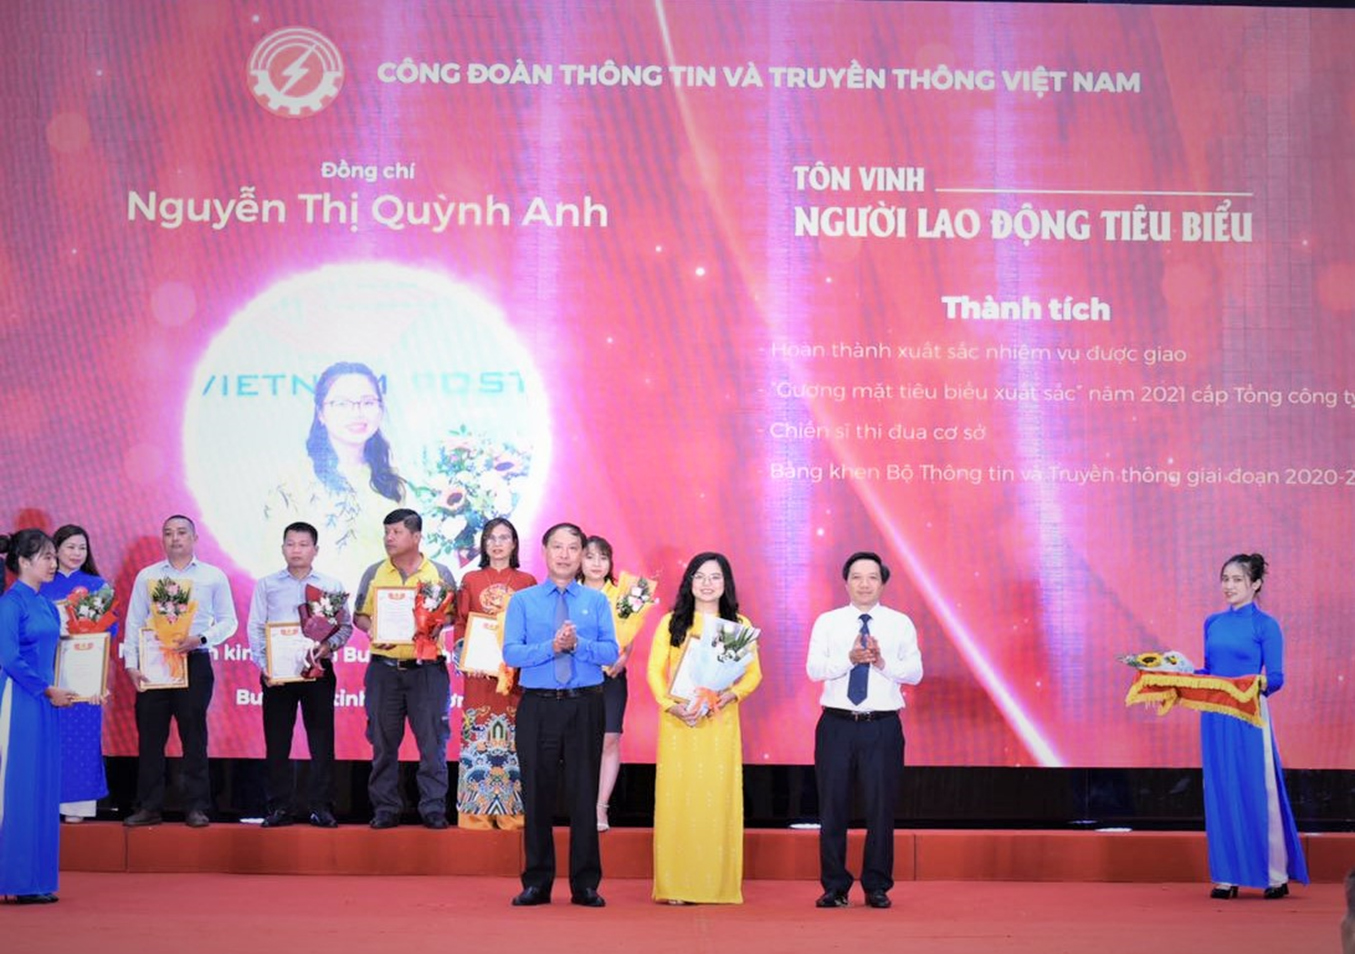 Chị Nguyễn Thị Quỳnh Anh được tôn vinh “Người lao động tiêu biểu ngành Thông tin và truyền thông năm 2022”.